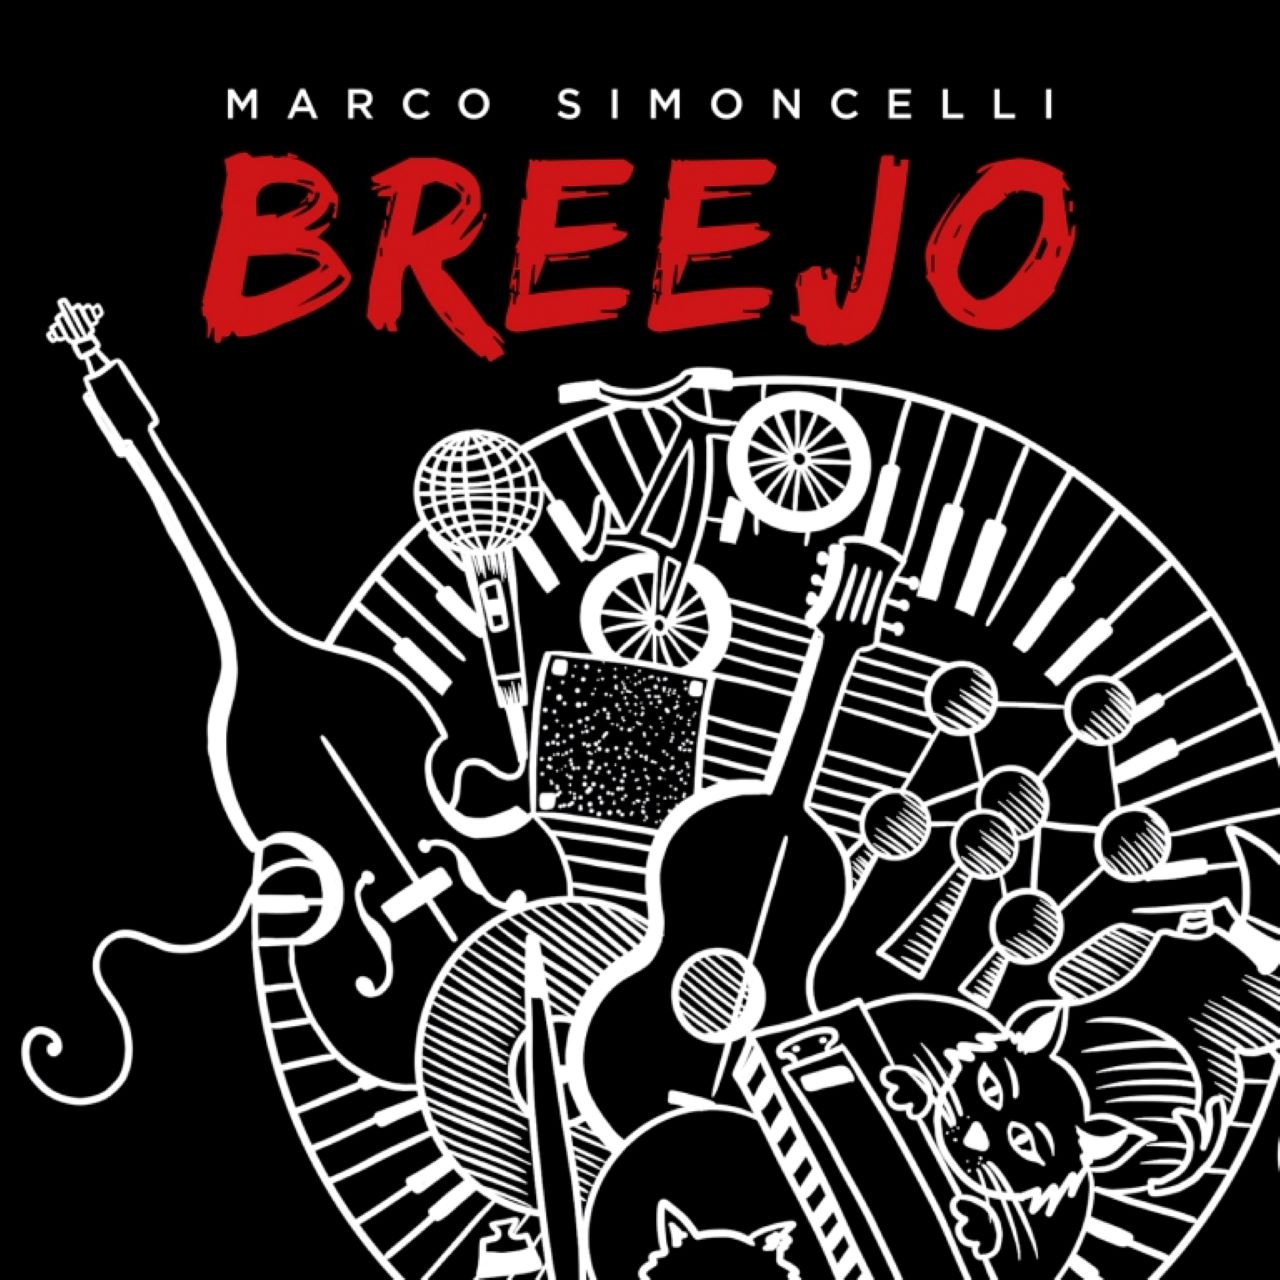 Marco Simoncelli – Breejo cover album